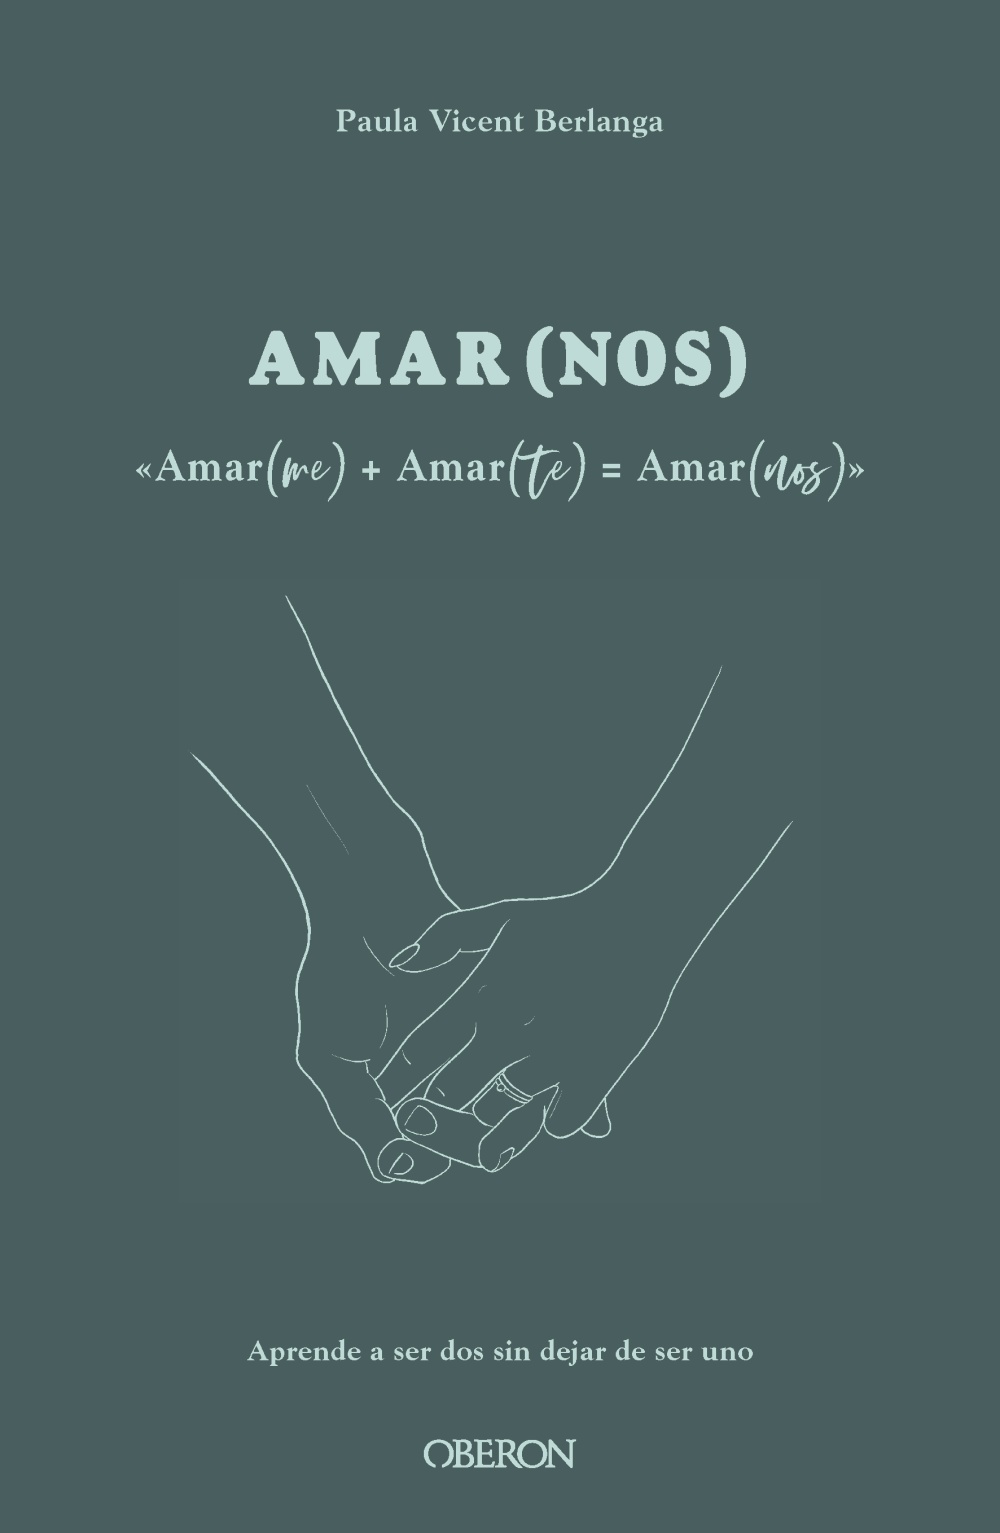 Amarme + Amarte = AMARNOS